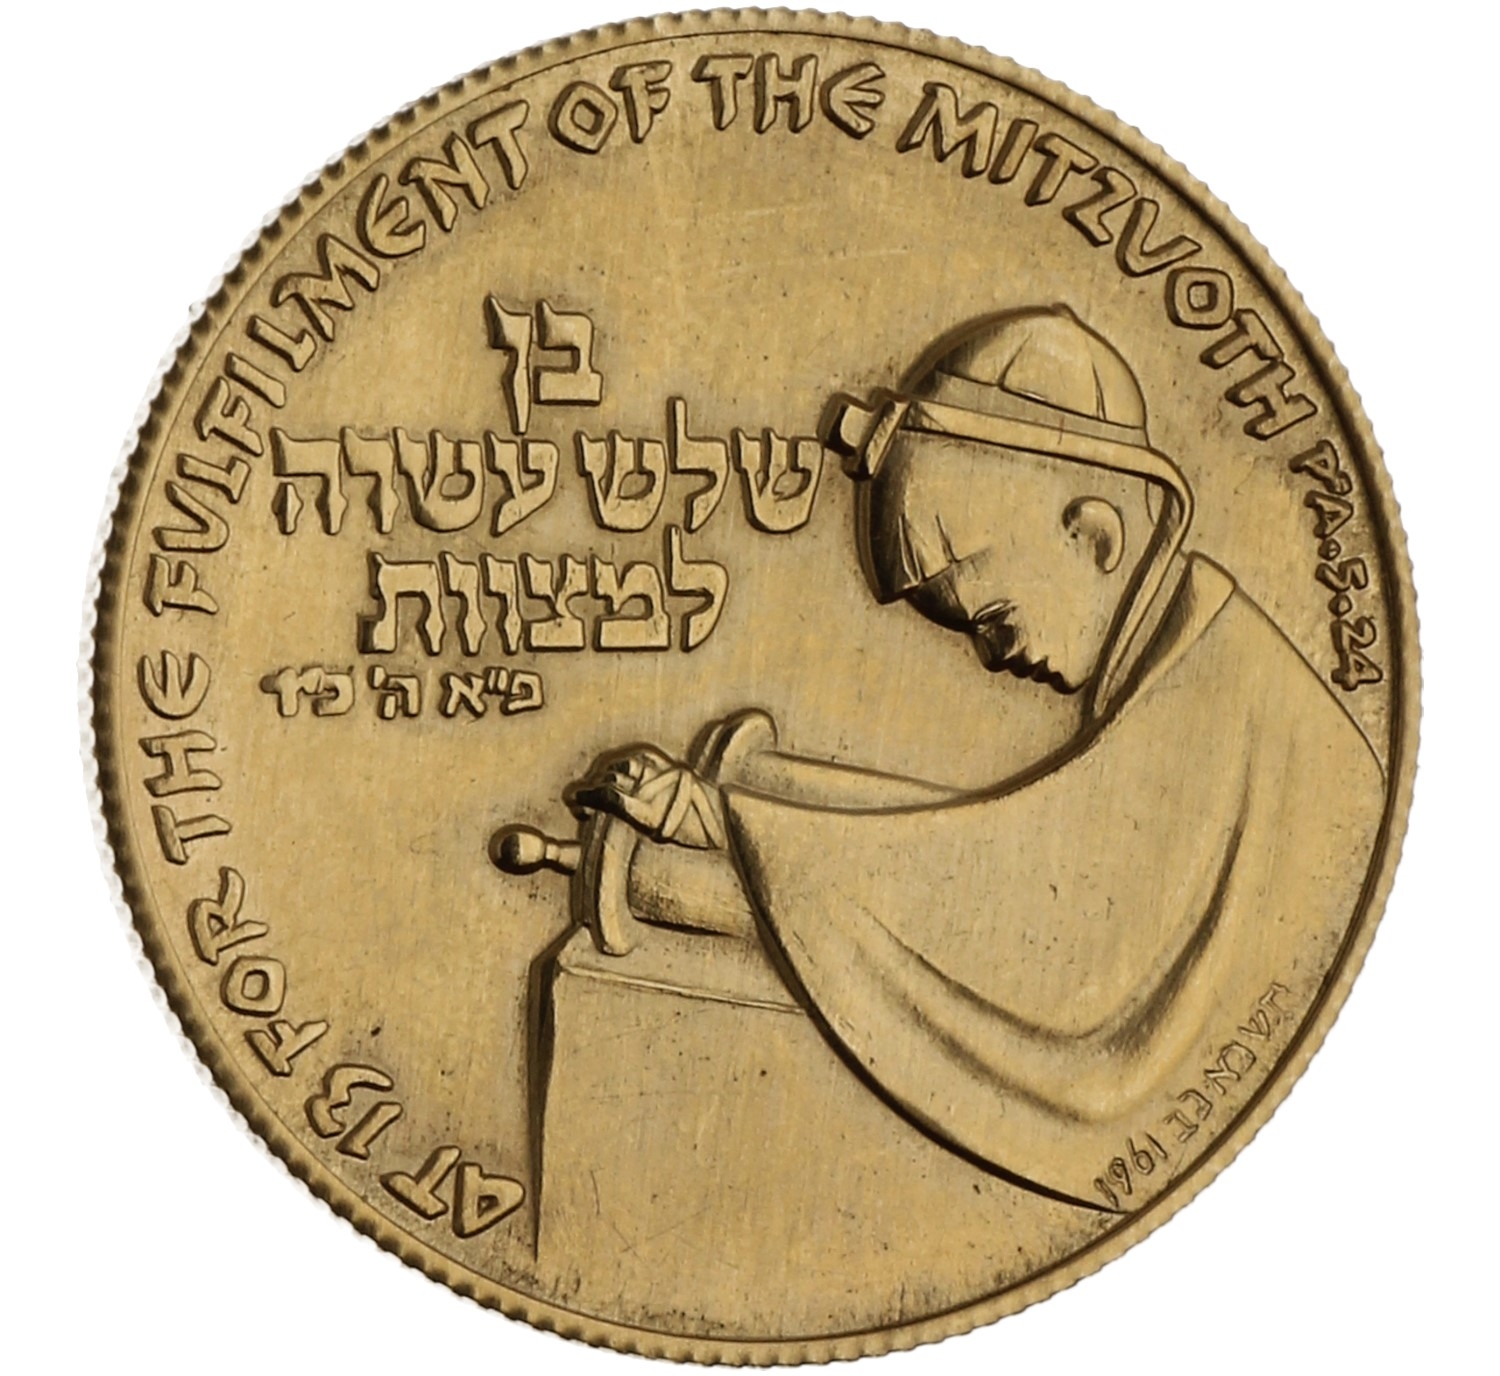 Medal (Bar Mitzvah) - Israel - 1961